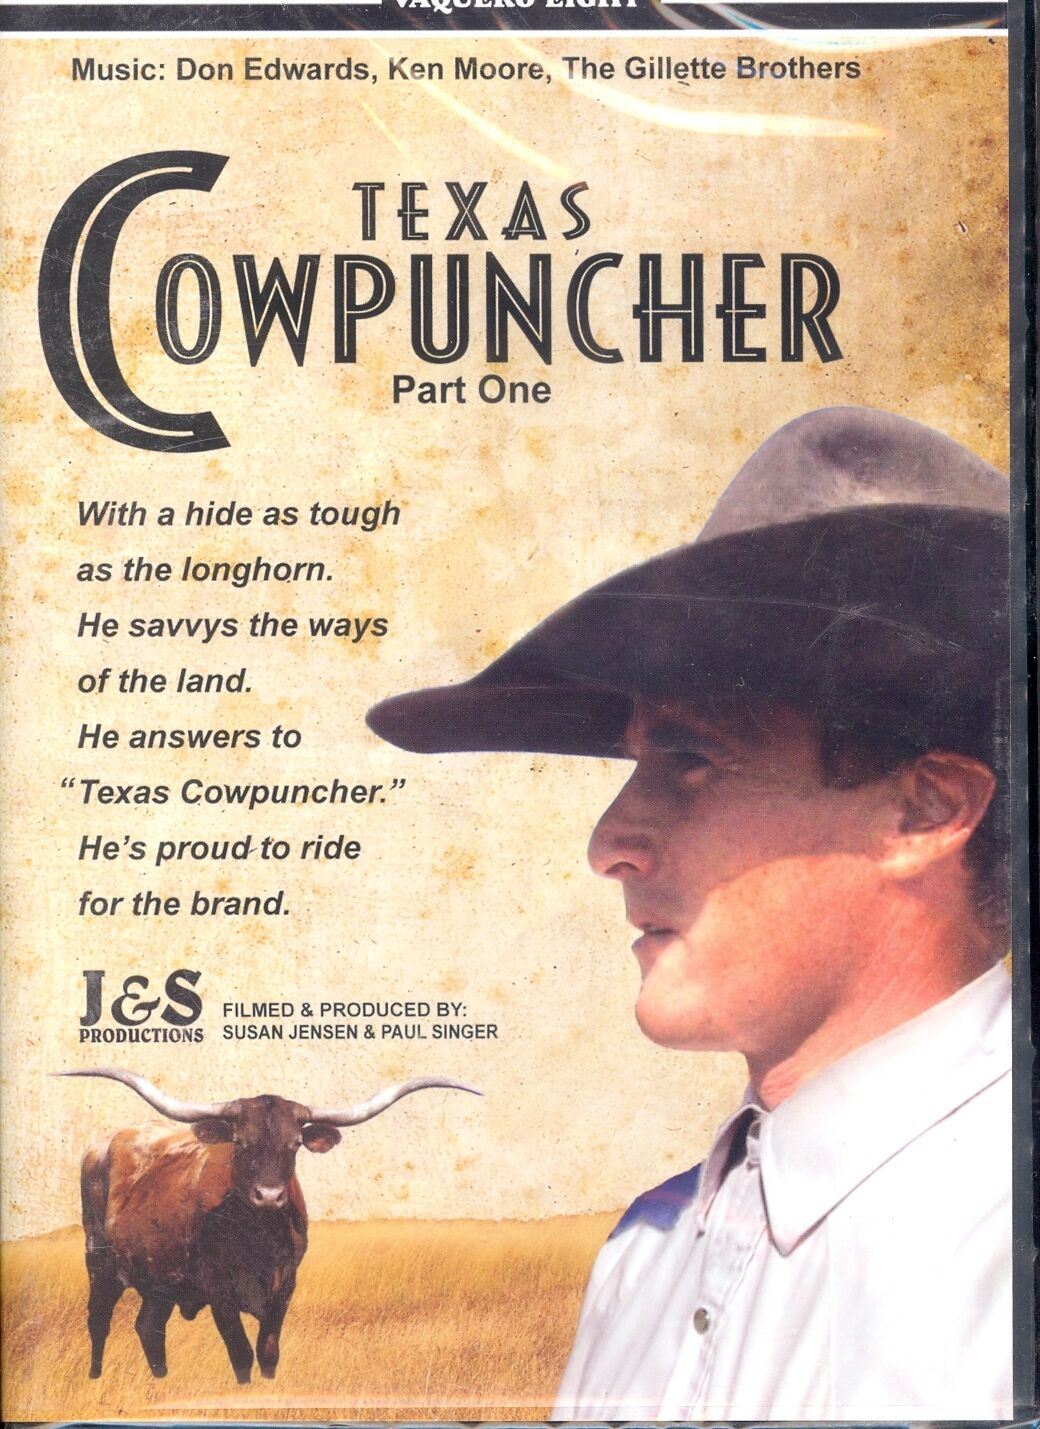 DVD-Vaquero Series-Vol 8: Texas Cowpuncher Part I